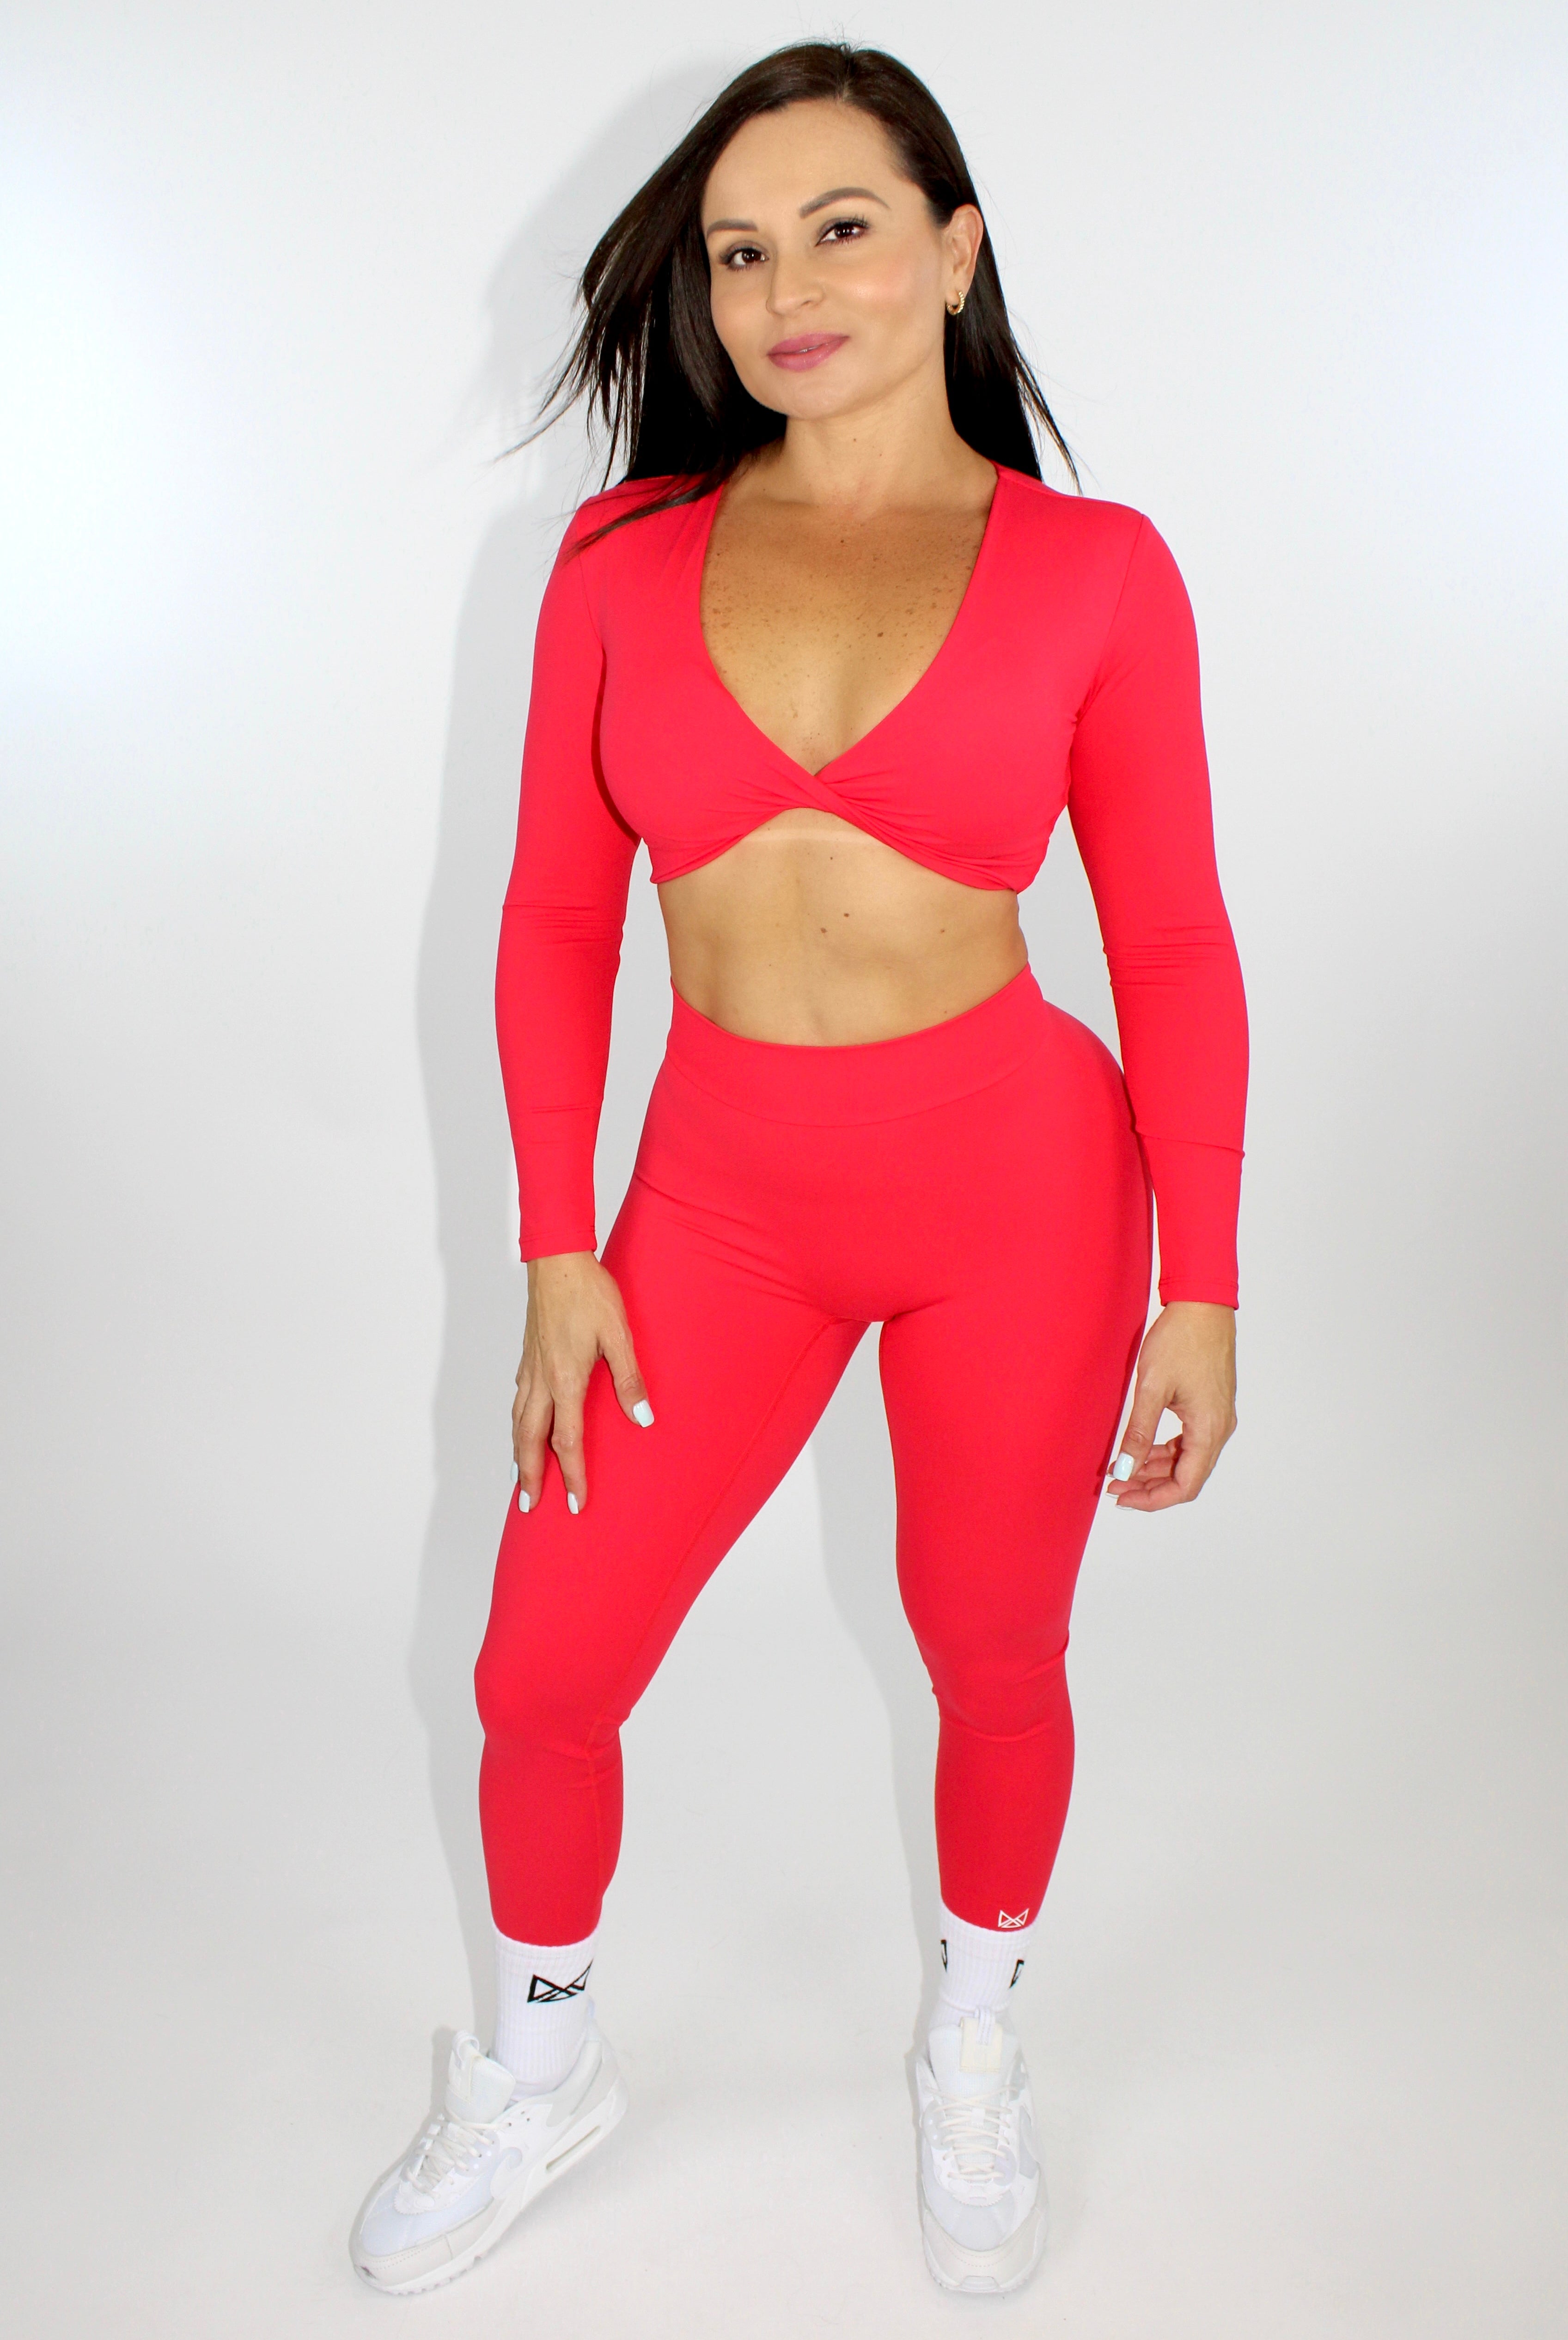 MILA MVMT Sportswear Long Sleeve Crop Top Gymwear Athleisure Sports Bra in Scarlet Red - model facing front